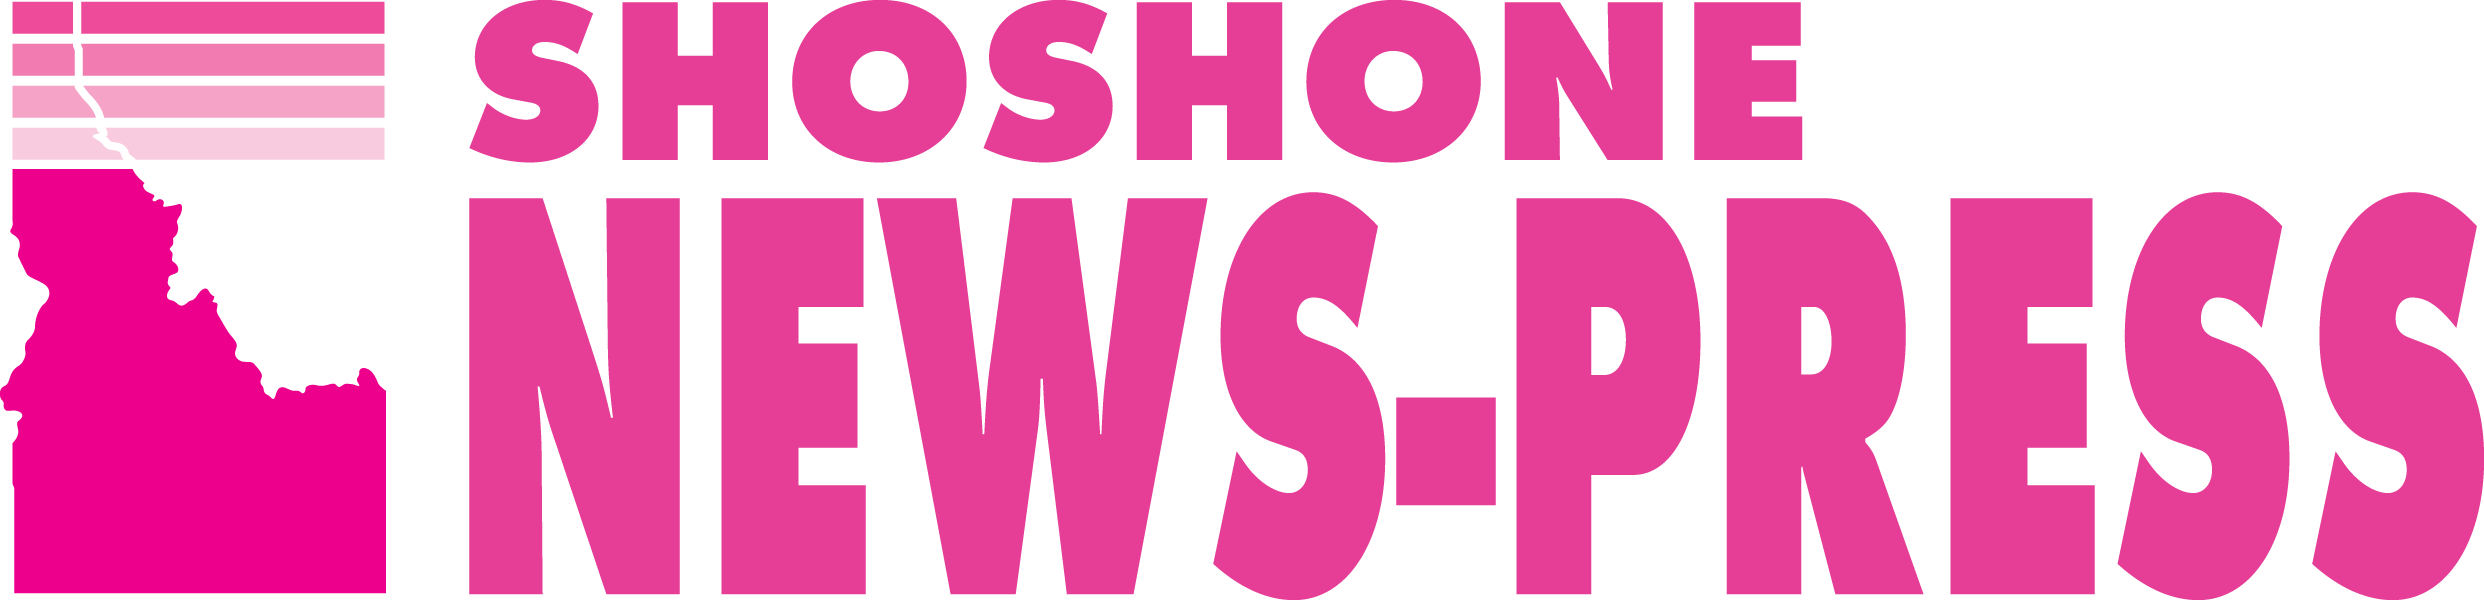 Shoshone News-Press Home